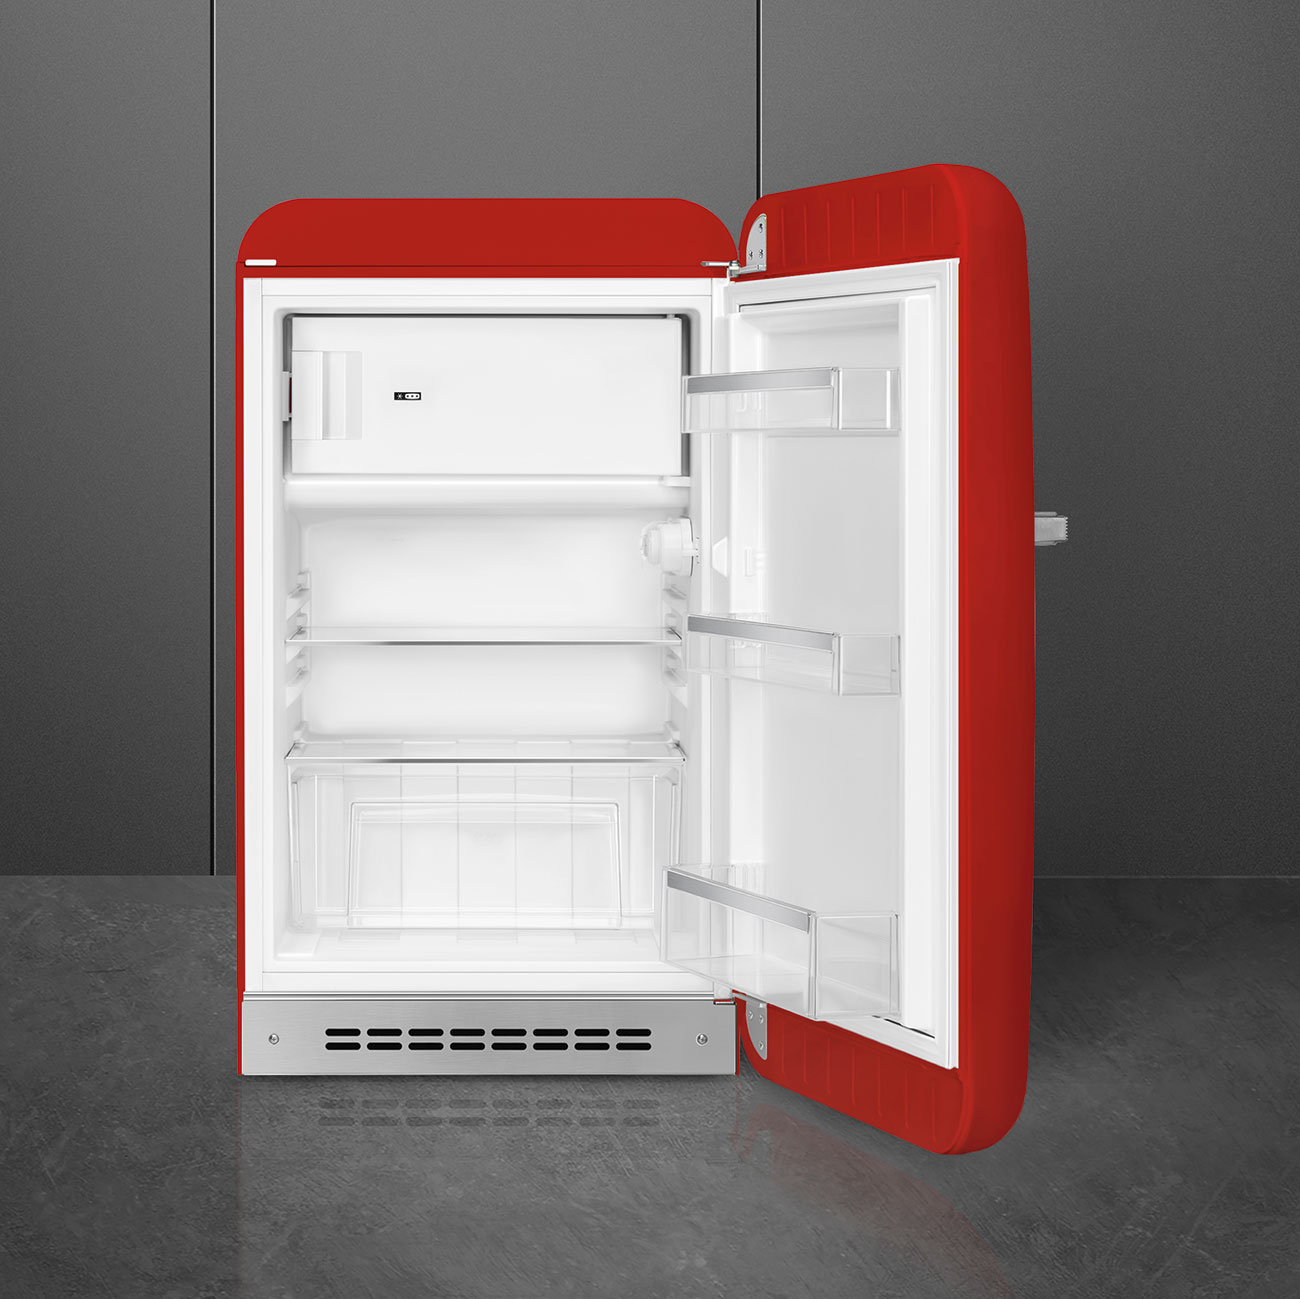 Rood koelkast - Smeg_2